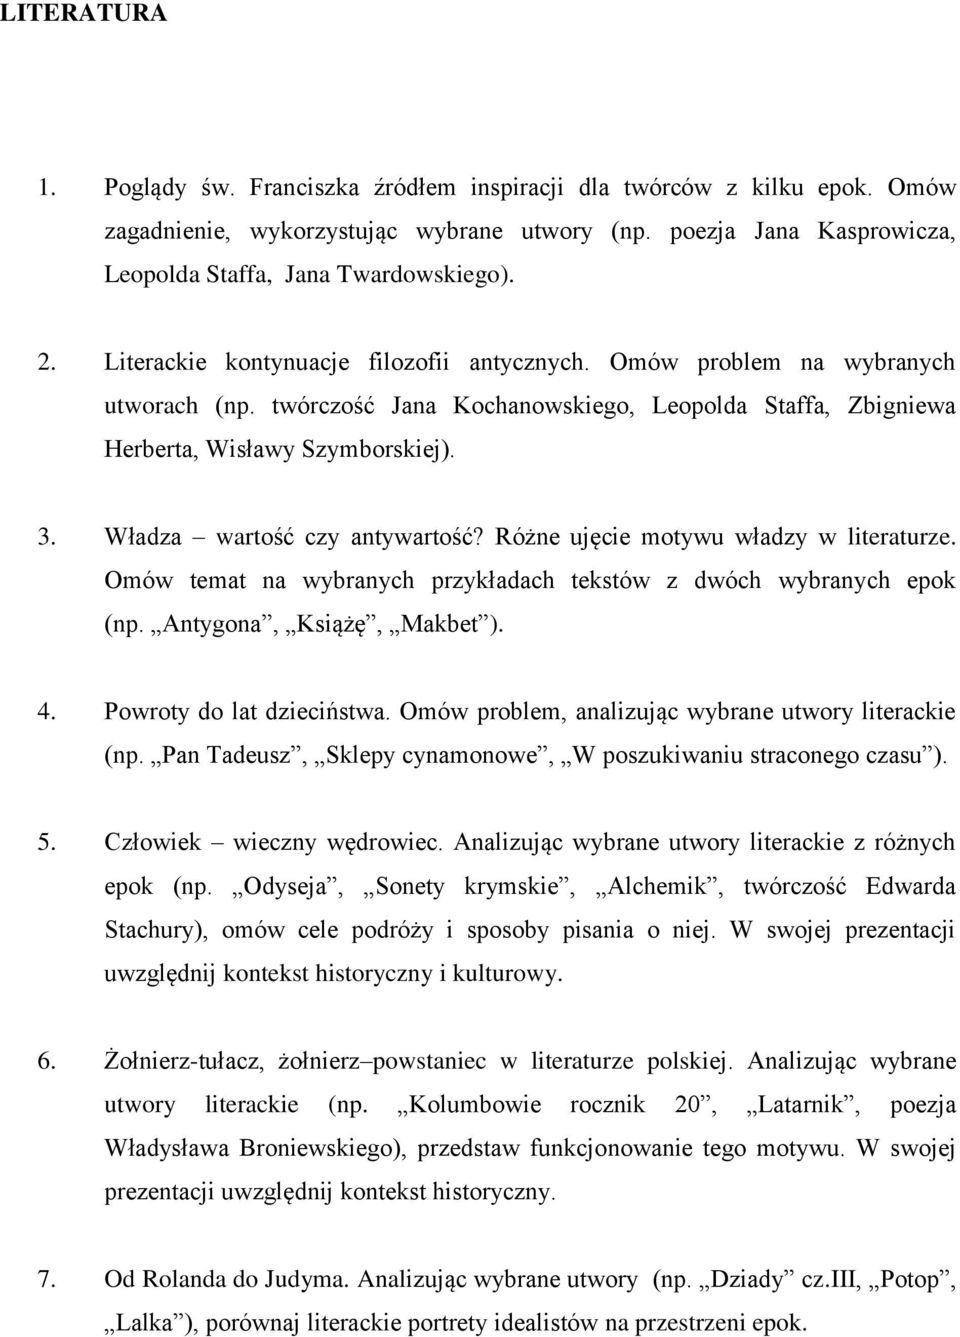 Zestaw pytań na maturę ustną z języka polskiego - PDF Free Download